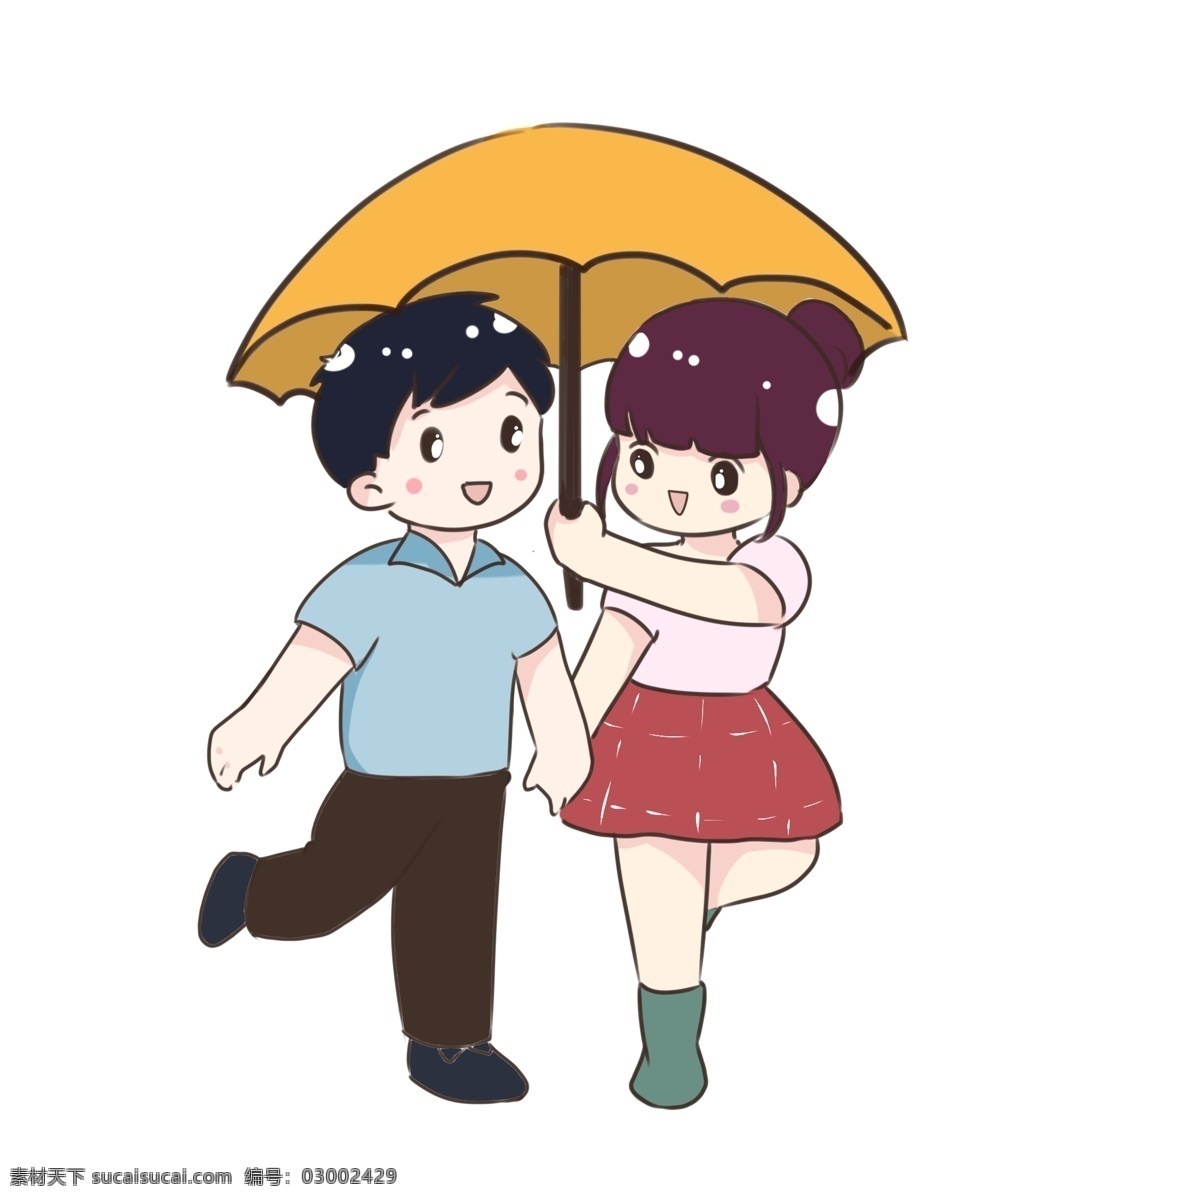 手绘 卡通 打伞 情侣 小 遮 雨 小朋友 团结友爱 六一儿童节 下雨天 小黄伞 雨伞